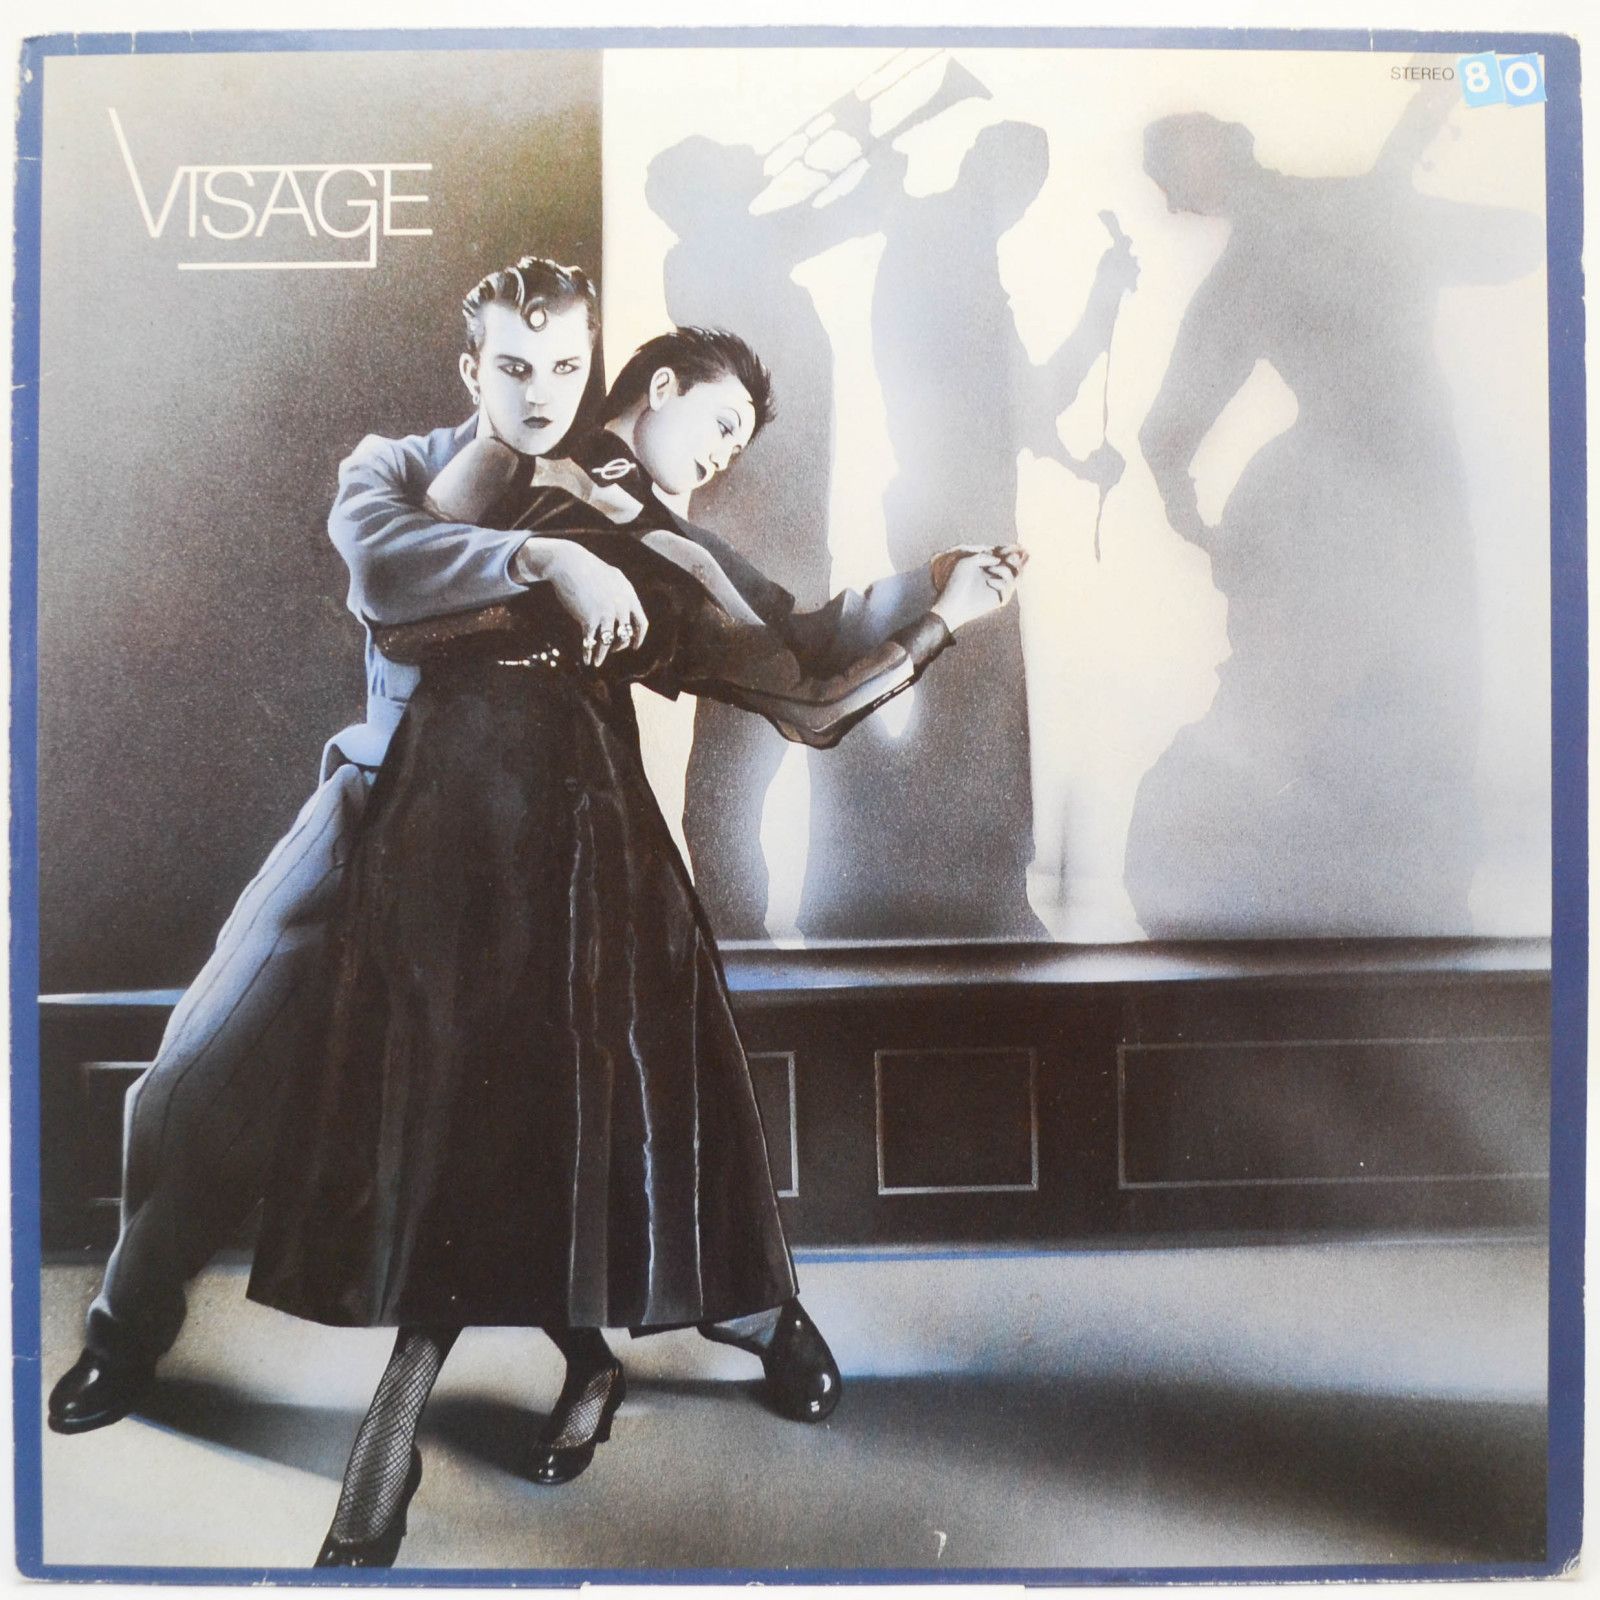 Visage — Visage, 1980